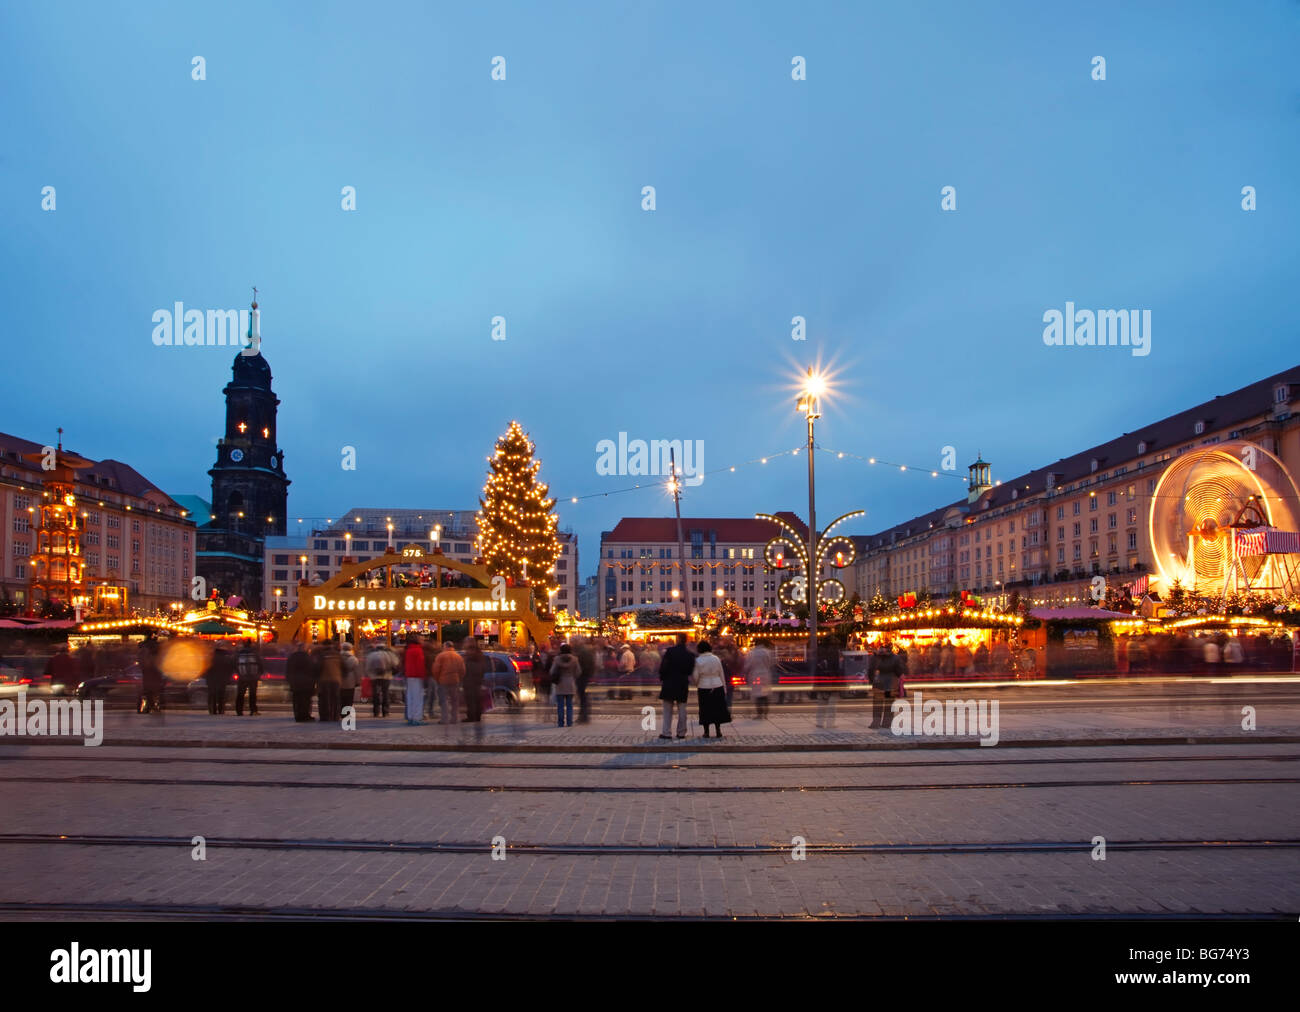 Le temps de Noël à Dresde, Allemagne Banque D'Images